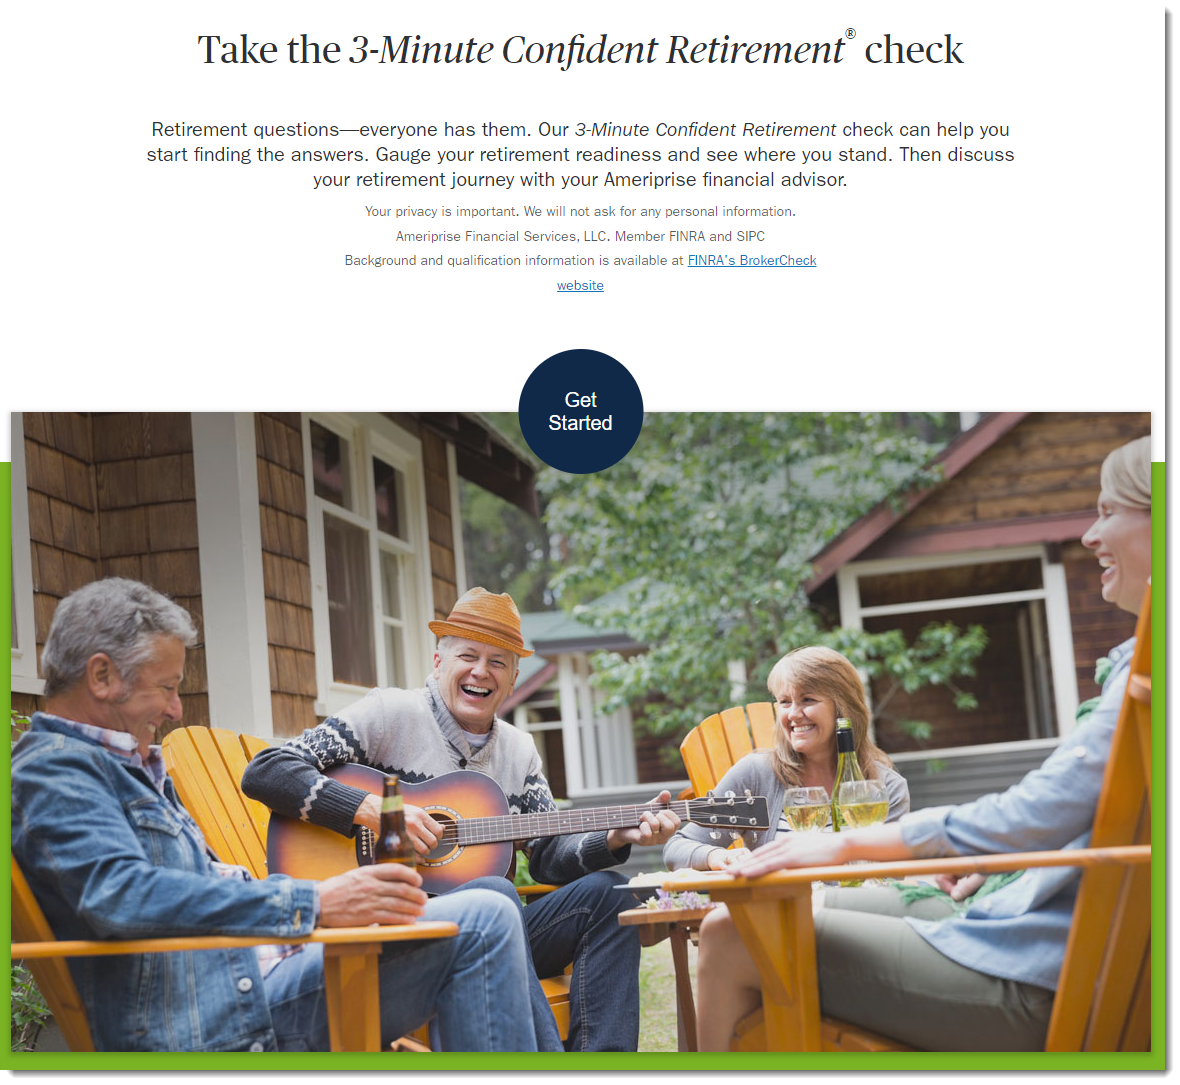 3 minute confident retirement check landing page